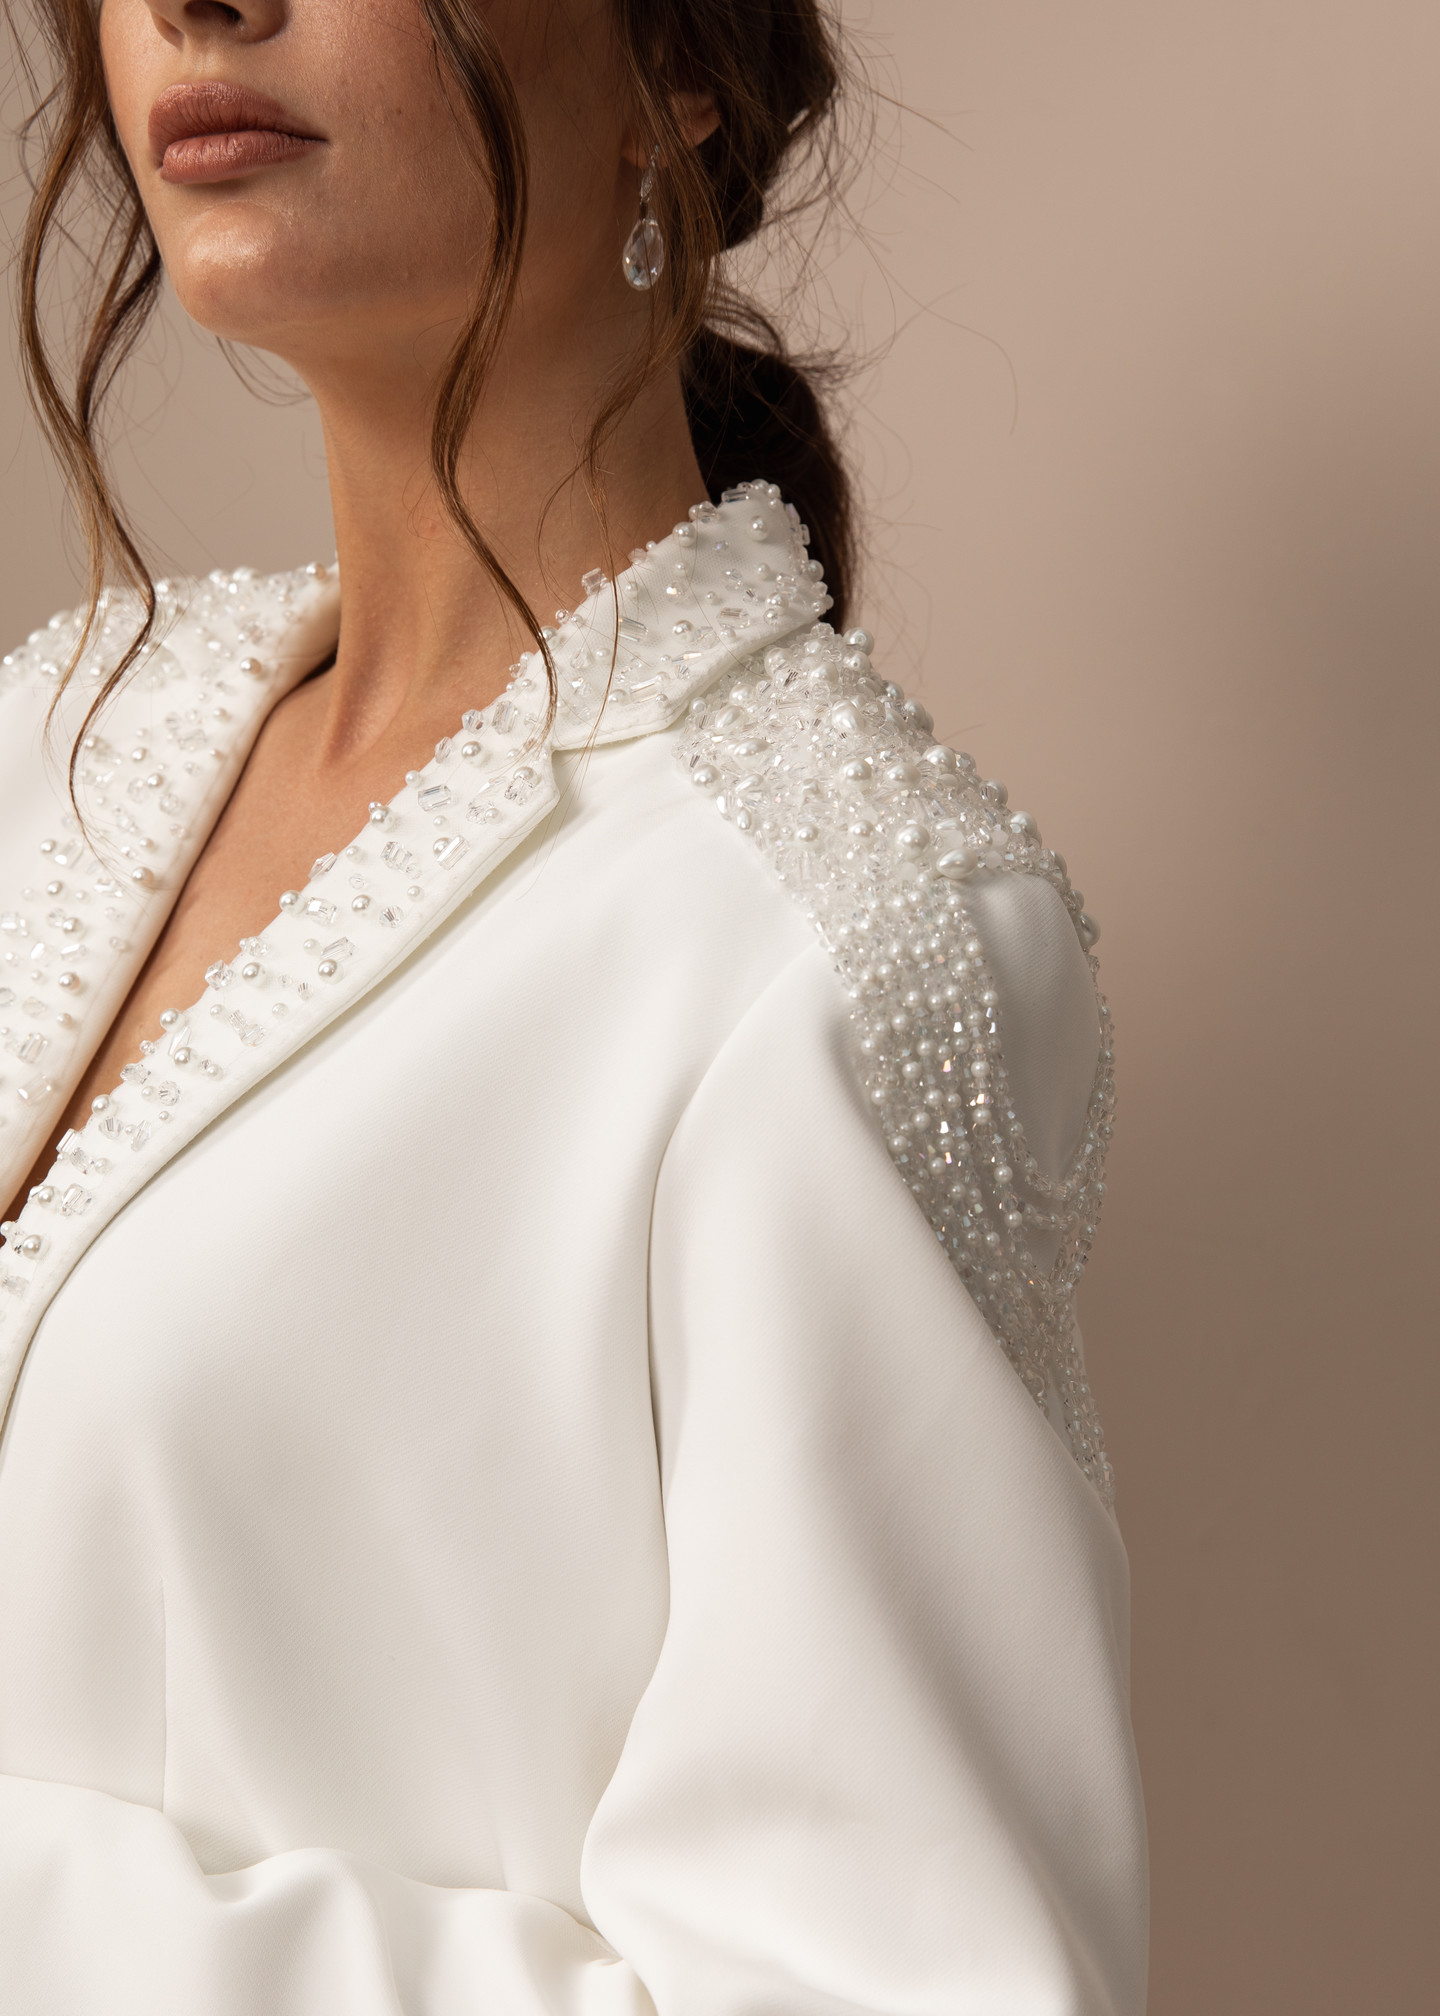 Жакет с вышивкой и эполетами, 2021, одежда, жакет, свадебное, молочно-белый, расшитый свадебный костюм №2, рукава, вышивка